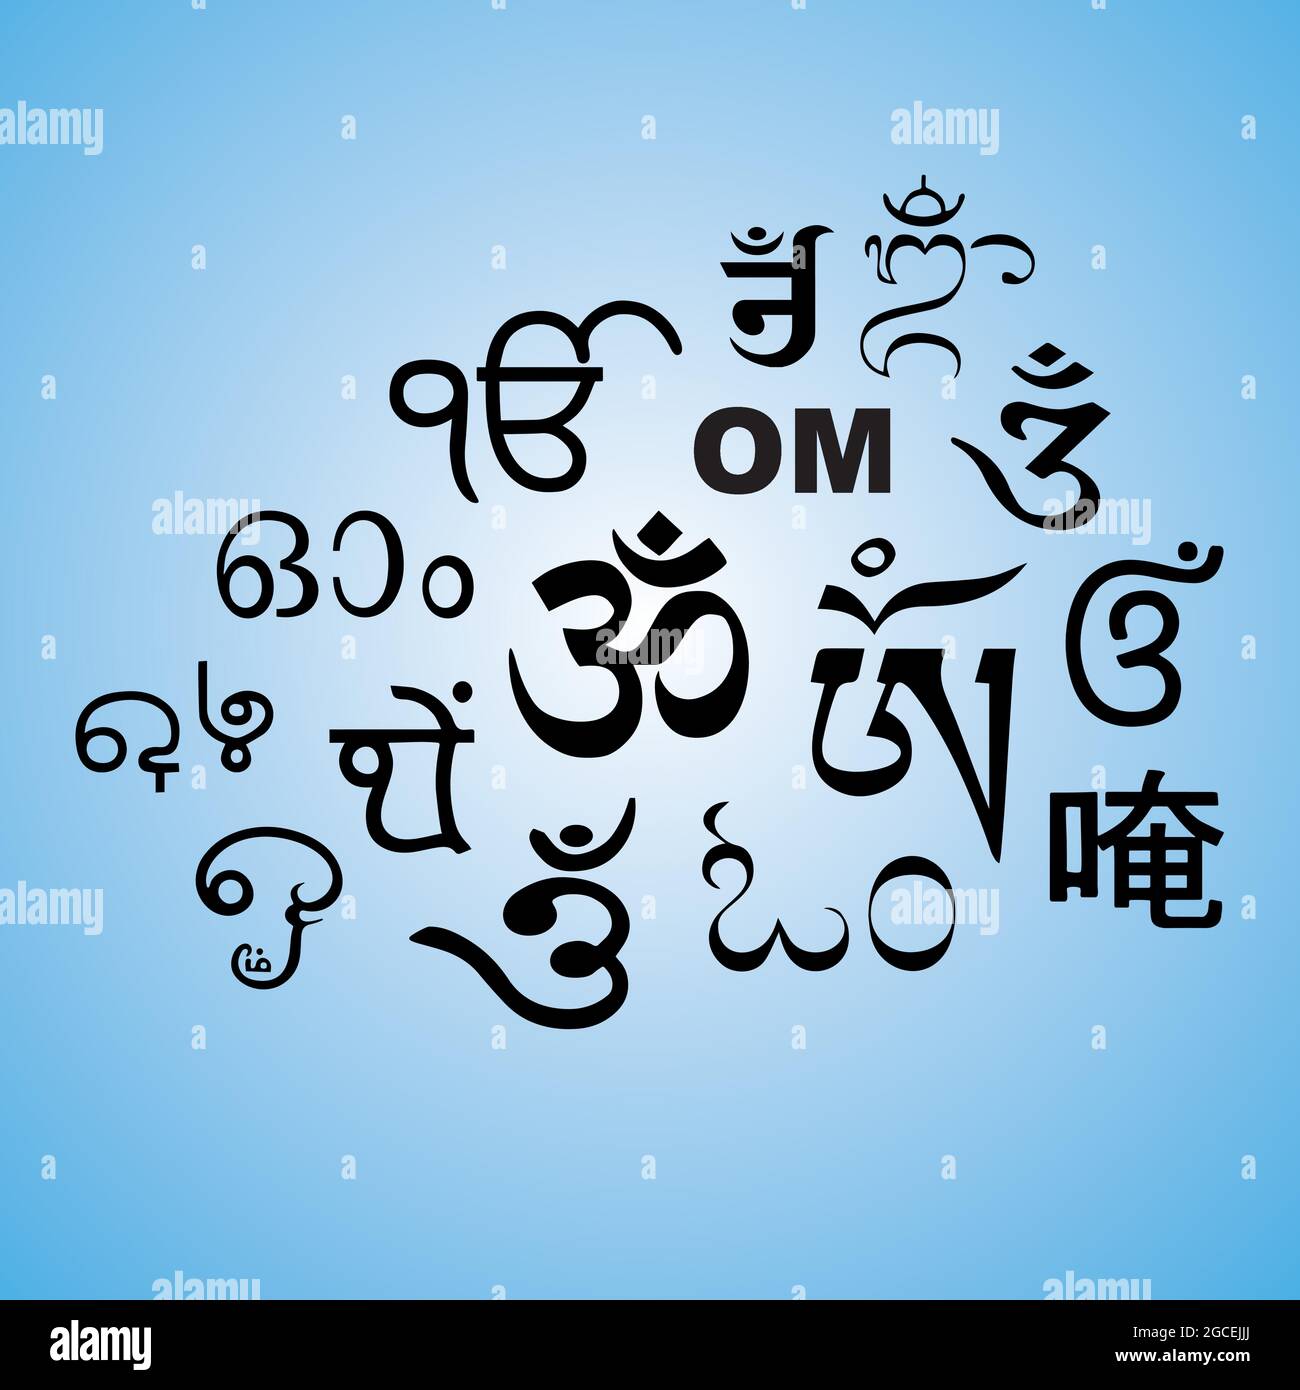 OM un mantra sacro e un simbolo dell'Induismo Illustrazione Vettoriale